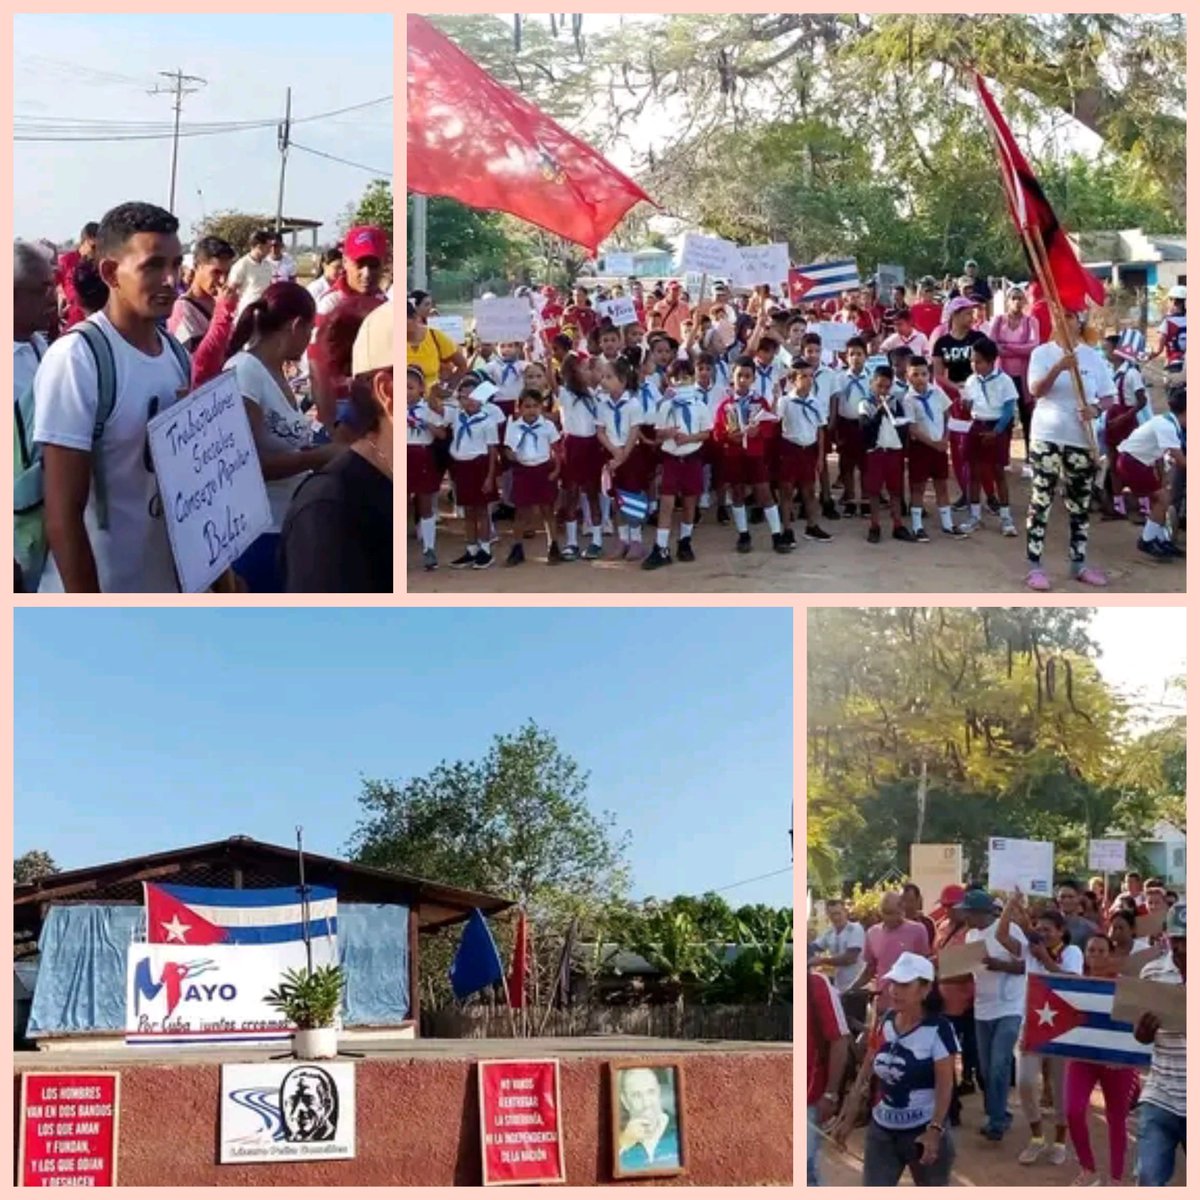 Desde el Consejo Popular Belic #Niquero #ProvinciaGranma desfile y acto comunitario por el 1ro de Mayo 🇨🇺 acompañados del patriotismo, entusiasmo y amor a #Cuba
Con la presencia del PCC, delegados de la AMPP del territorio, CTC, CAM y pobladores #porcubalomejor